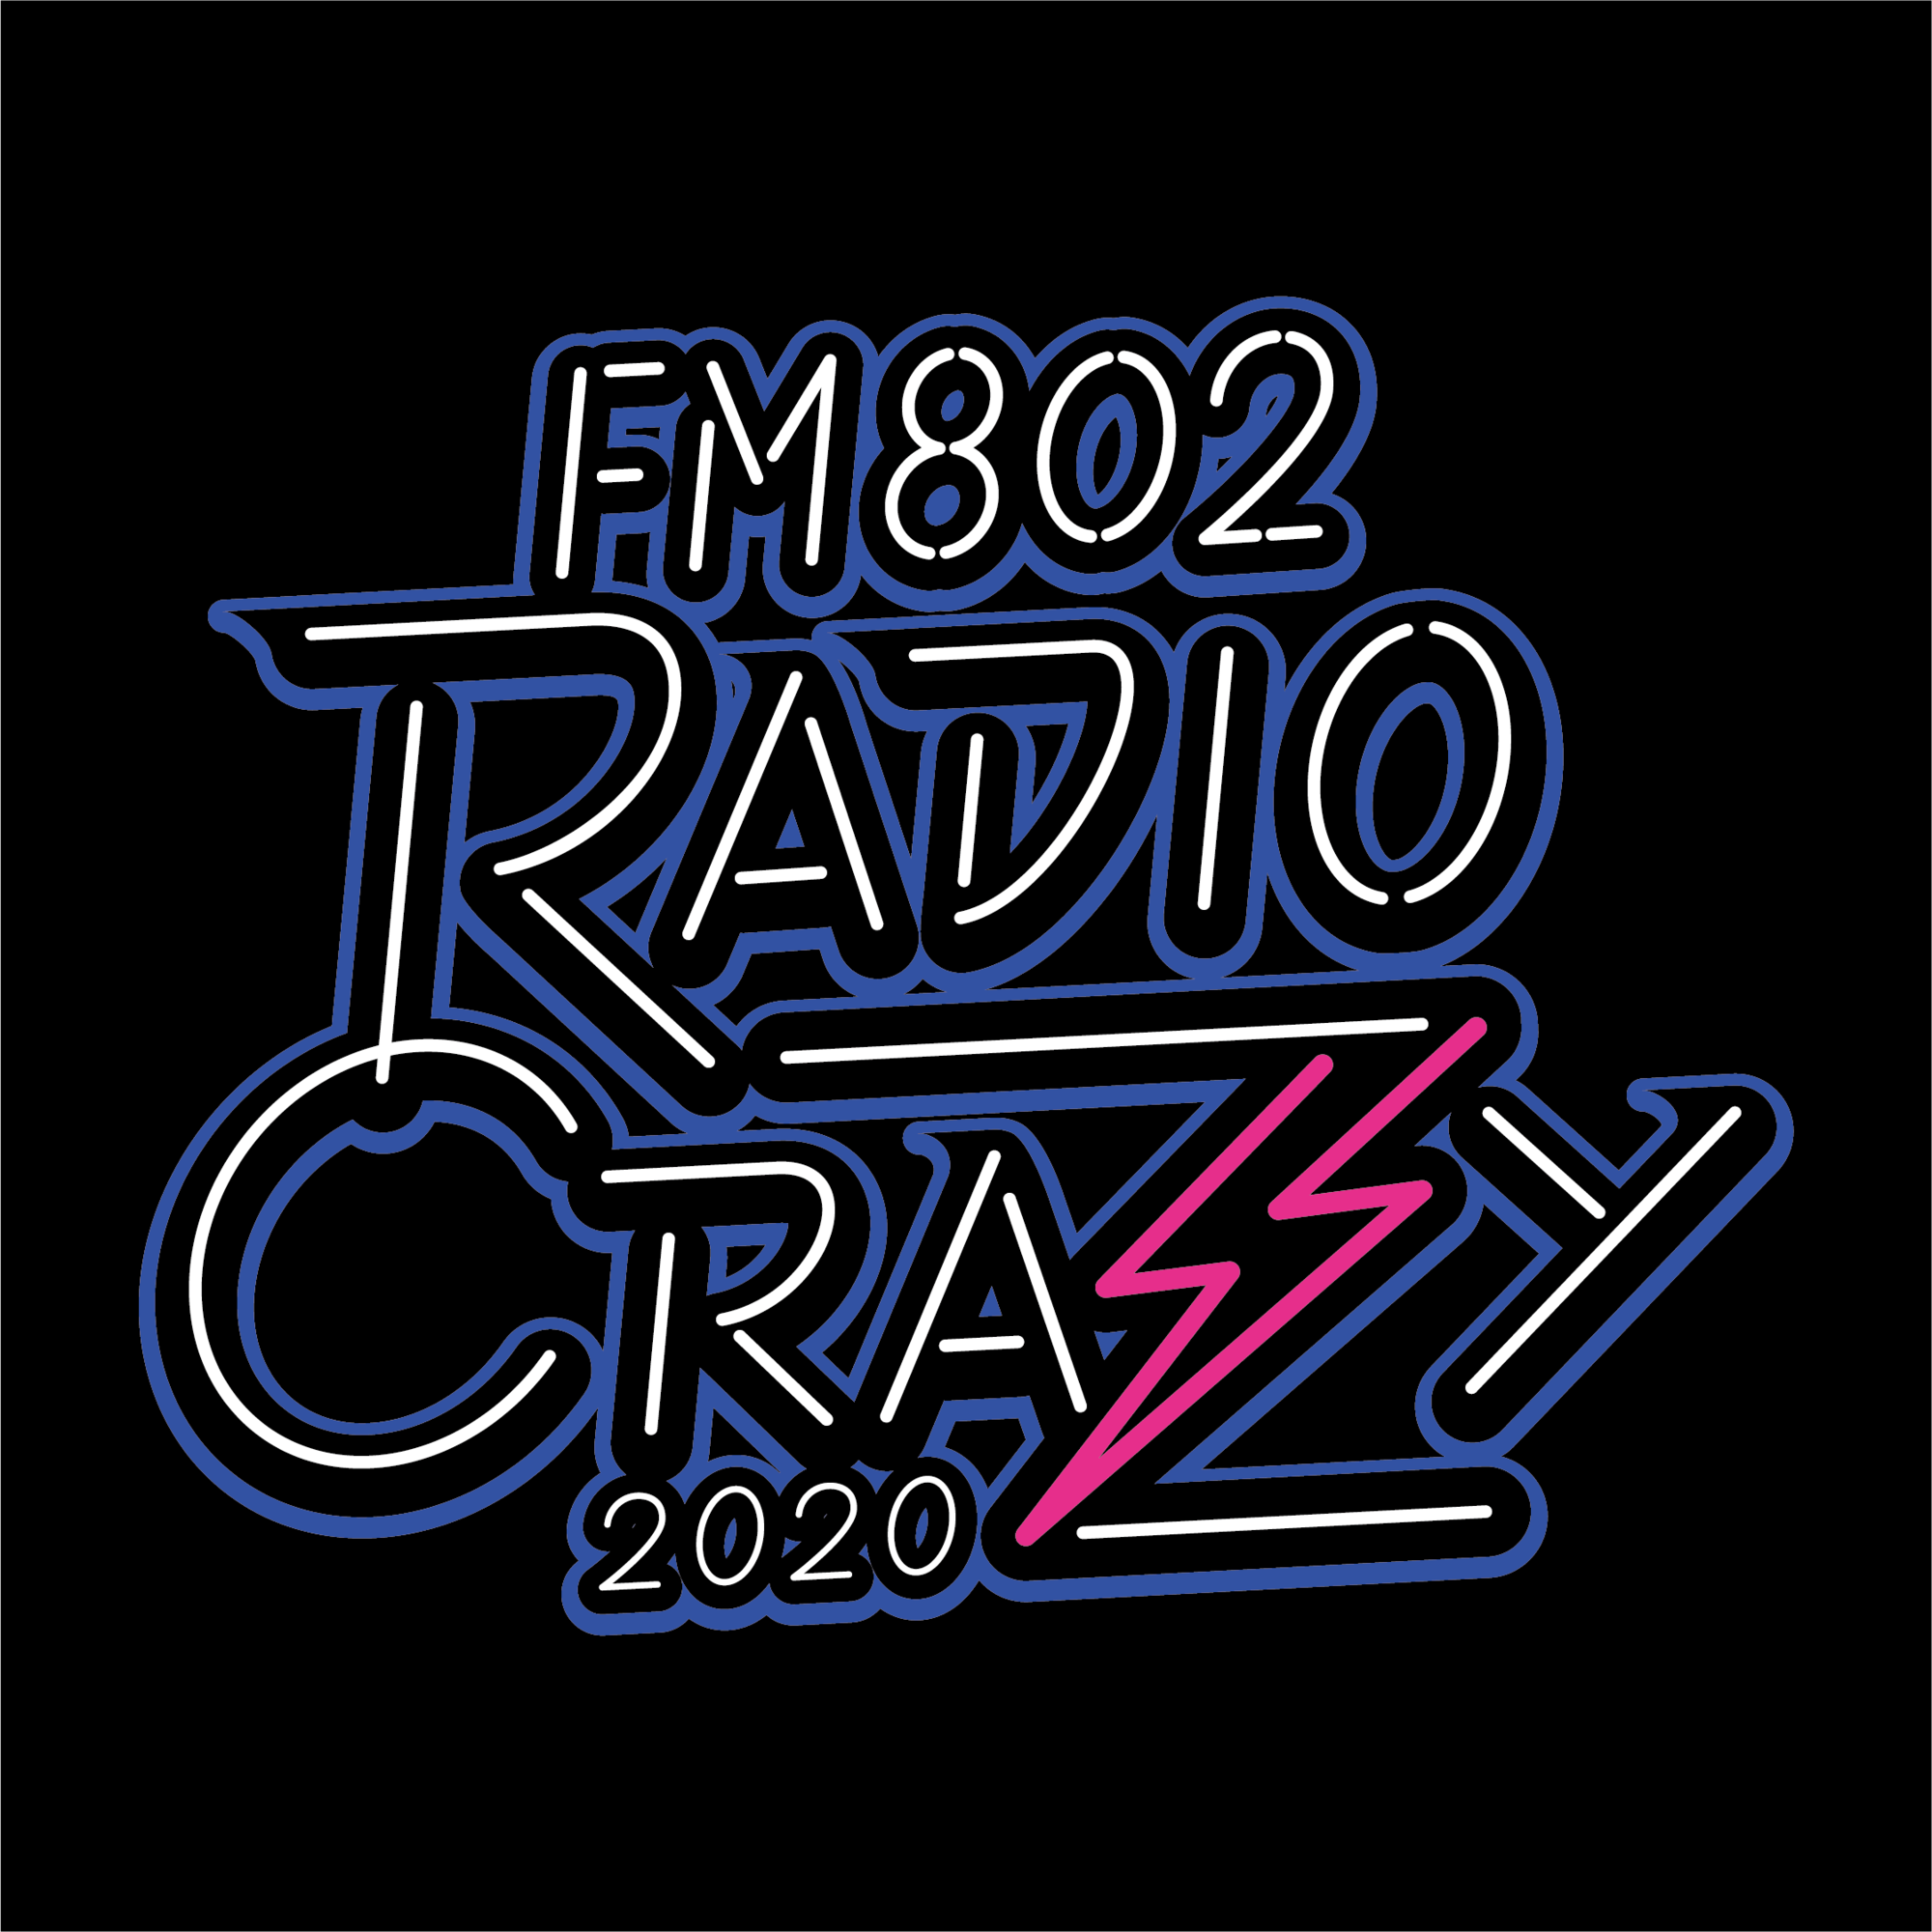 【公演中止】2020.12.28(月)　FM802 ROCK FESTIVAL RADIO CRAZY 2020　インテックス大阪 